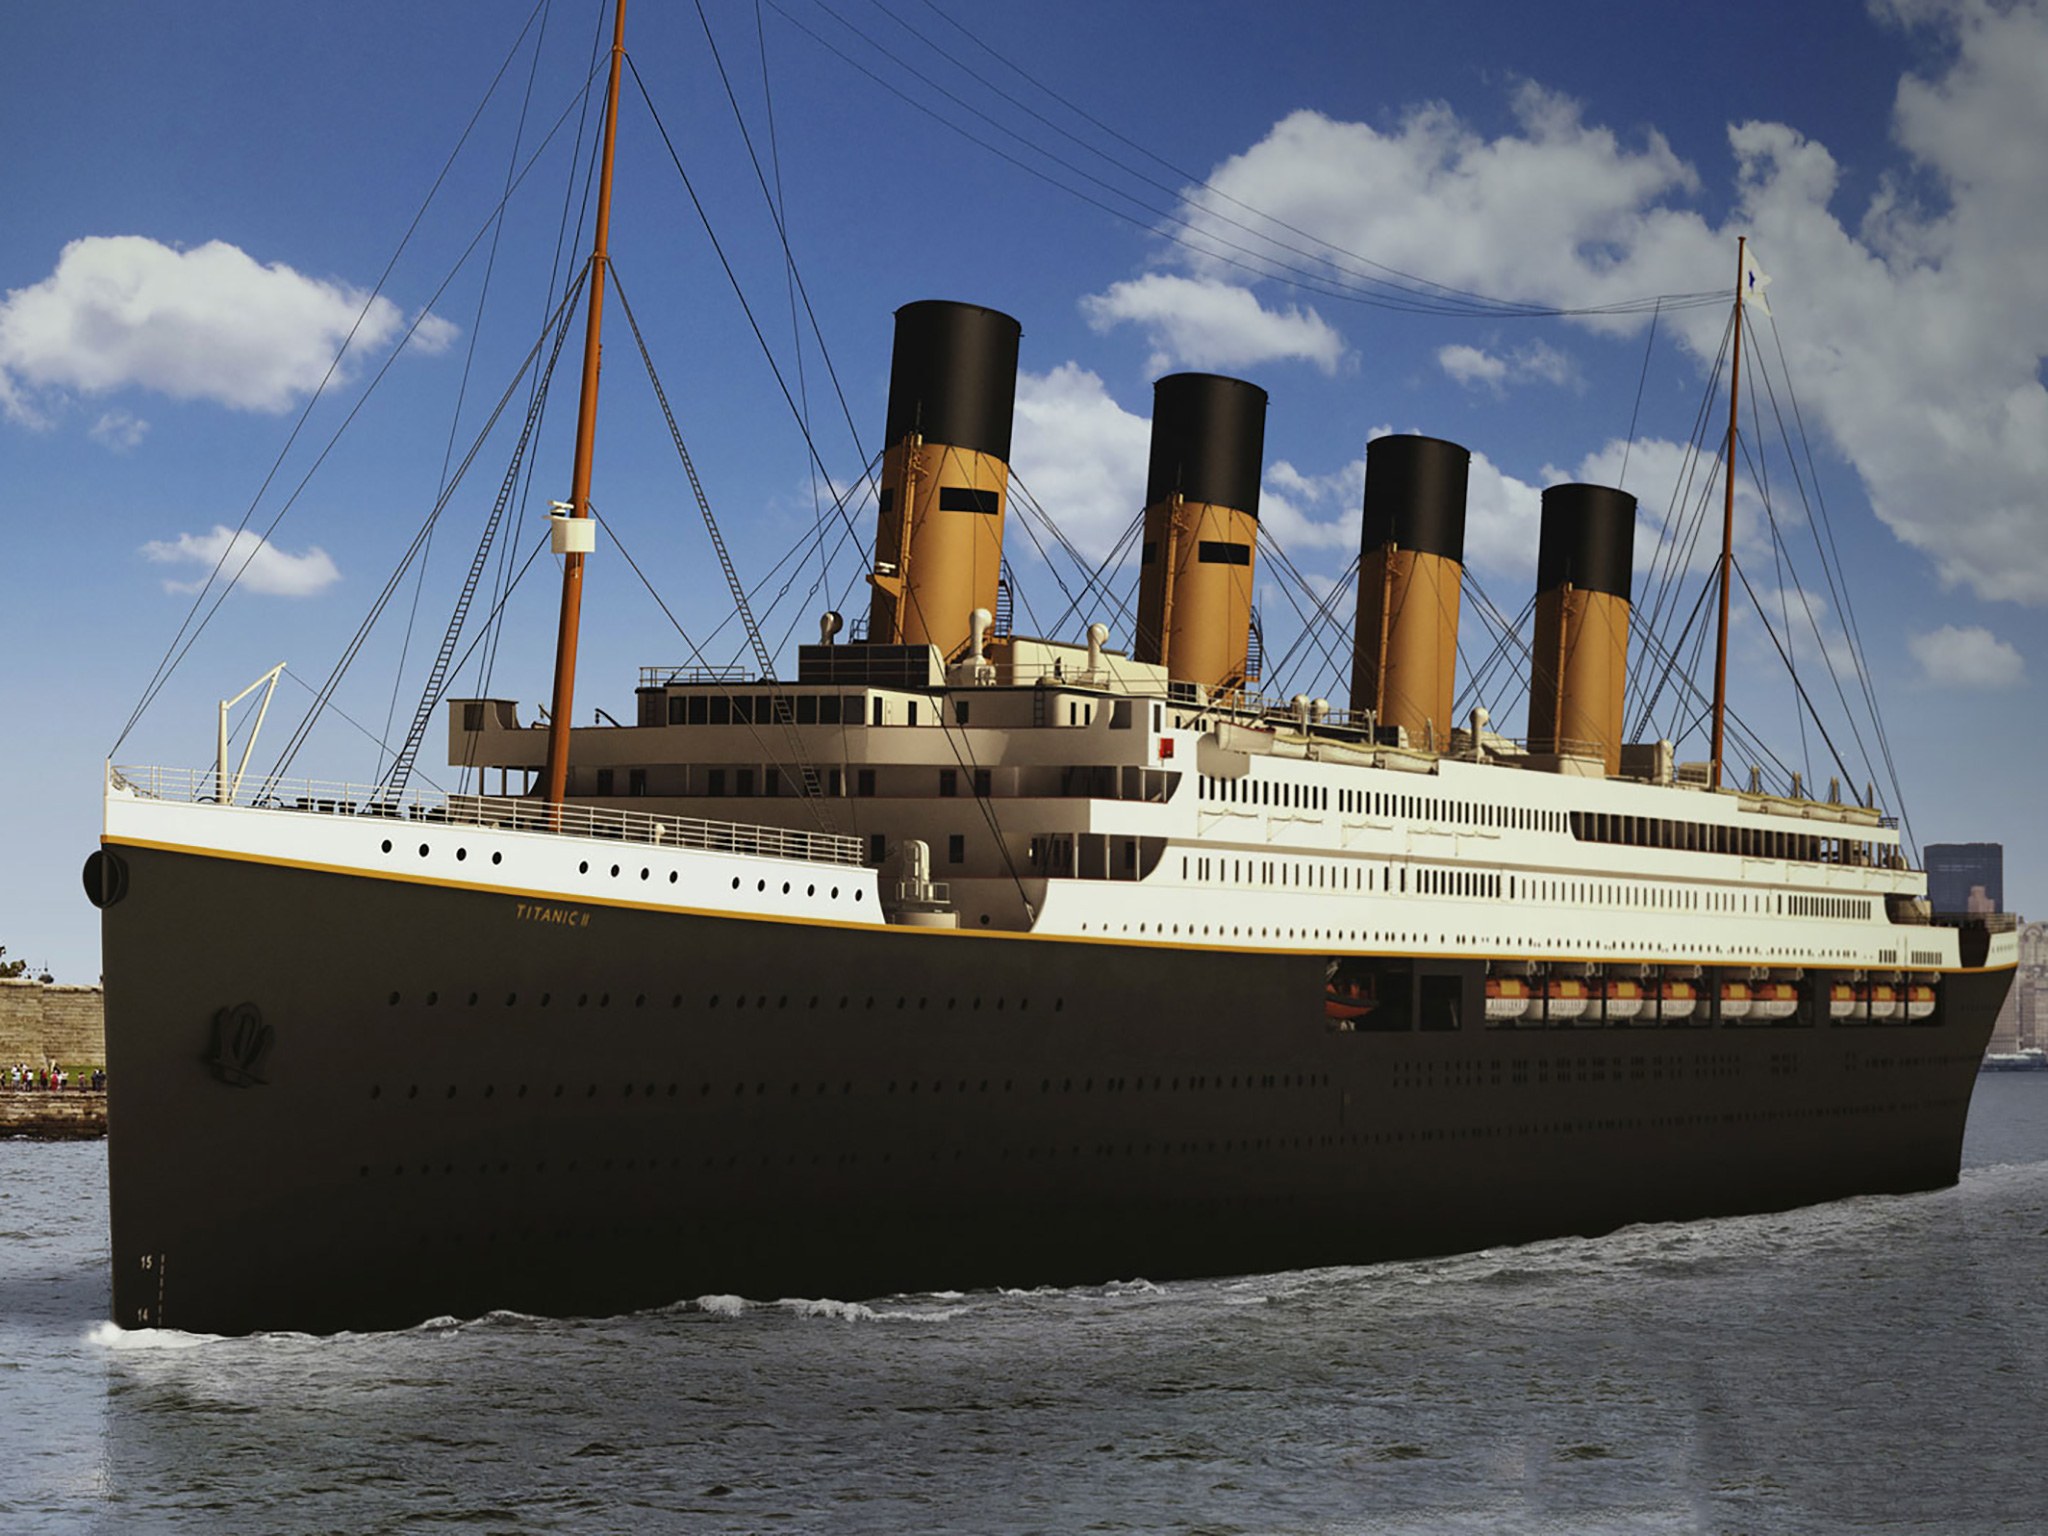 Le Titanic : une croisière sur le célèbre paquebot sera bientôt possible !